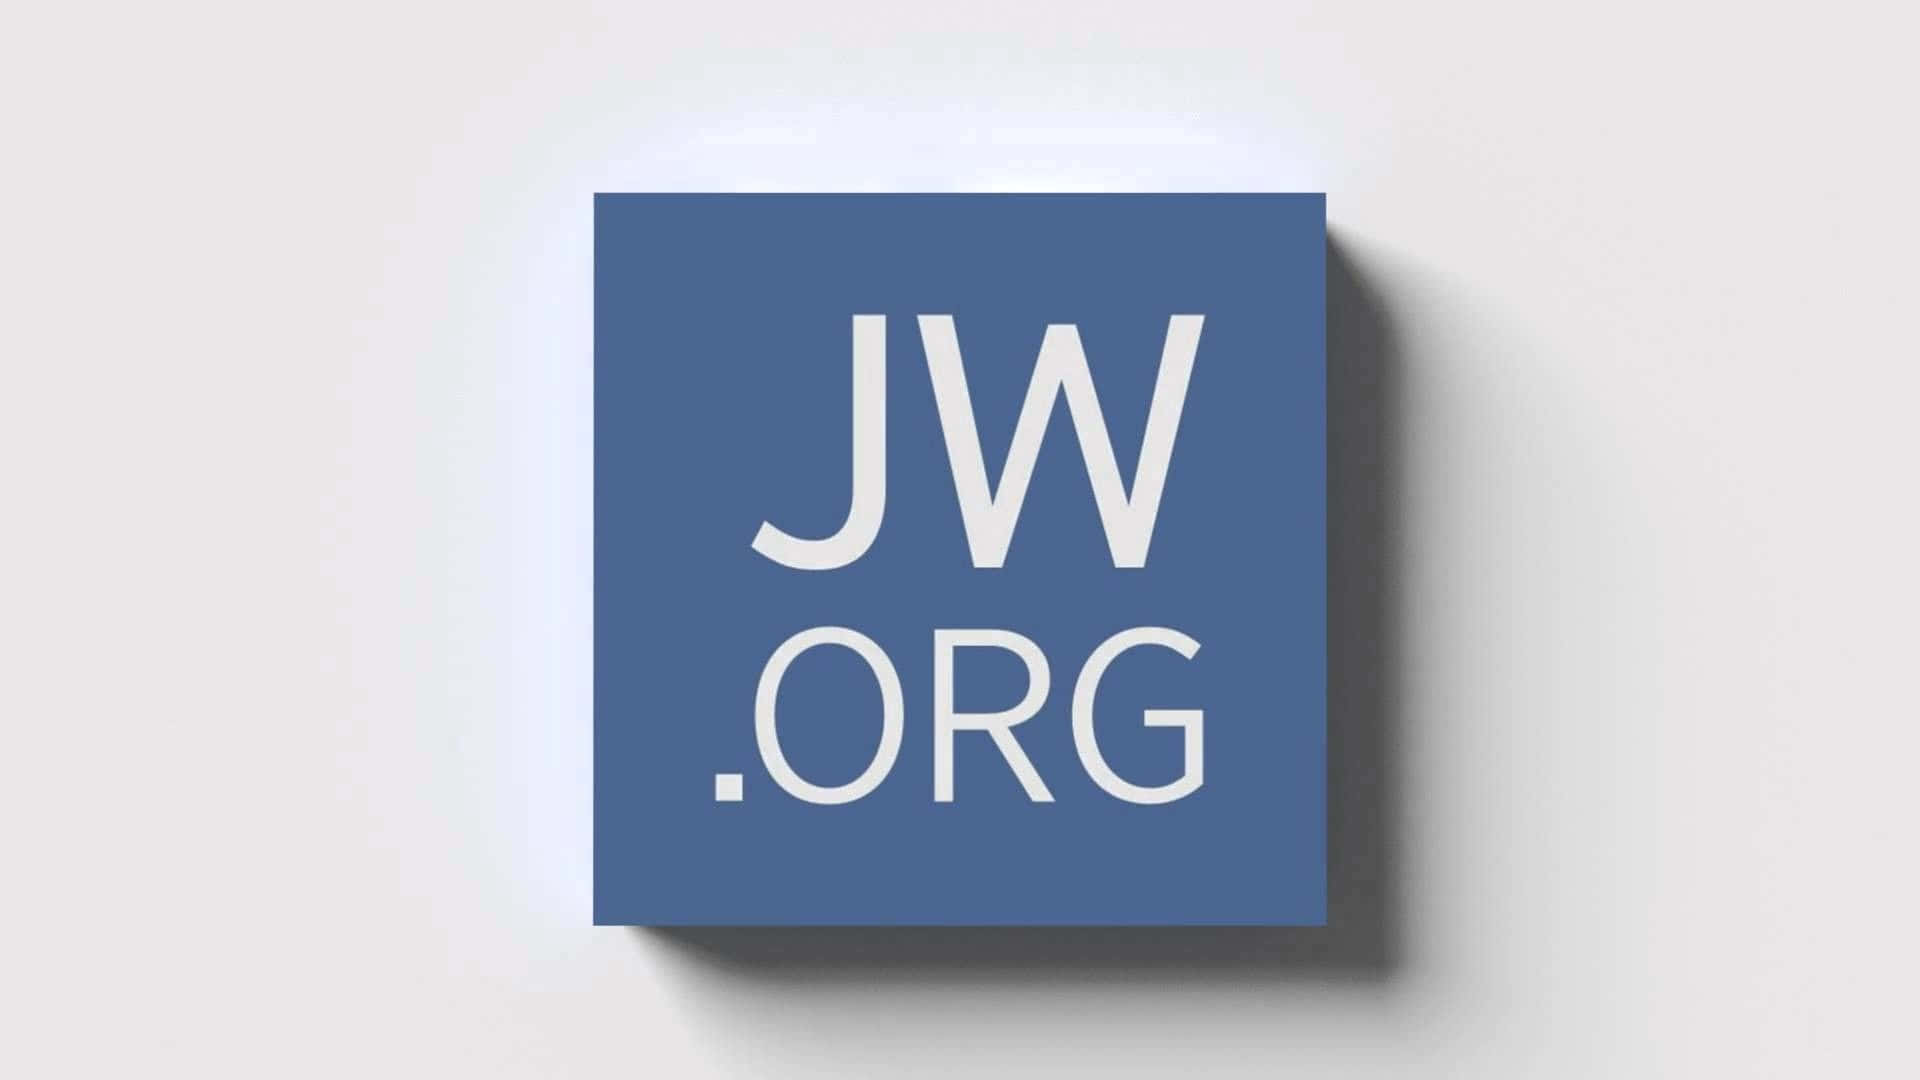 Logode Jworg En Un Cuadrado Azul. Fondo de pantalla